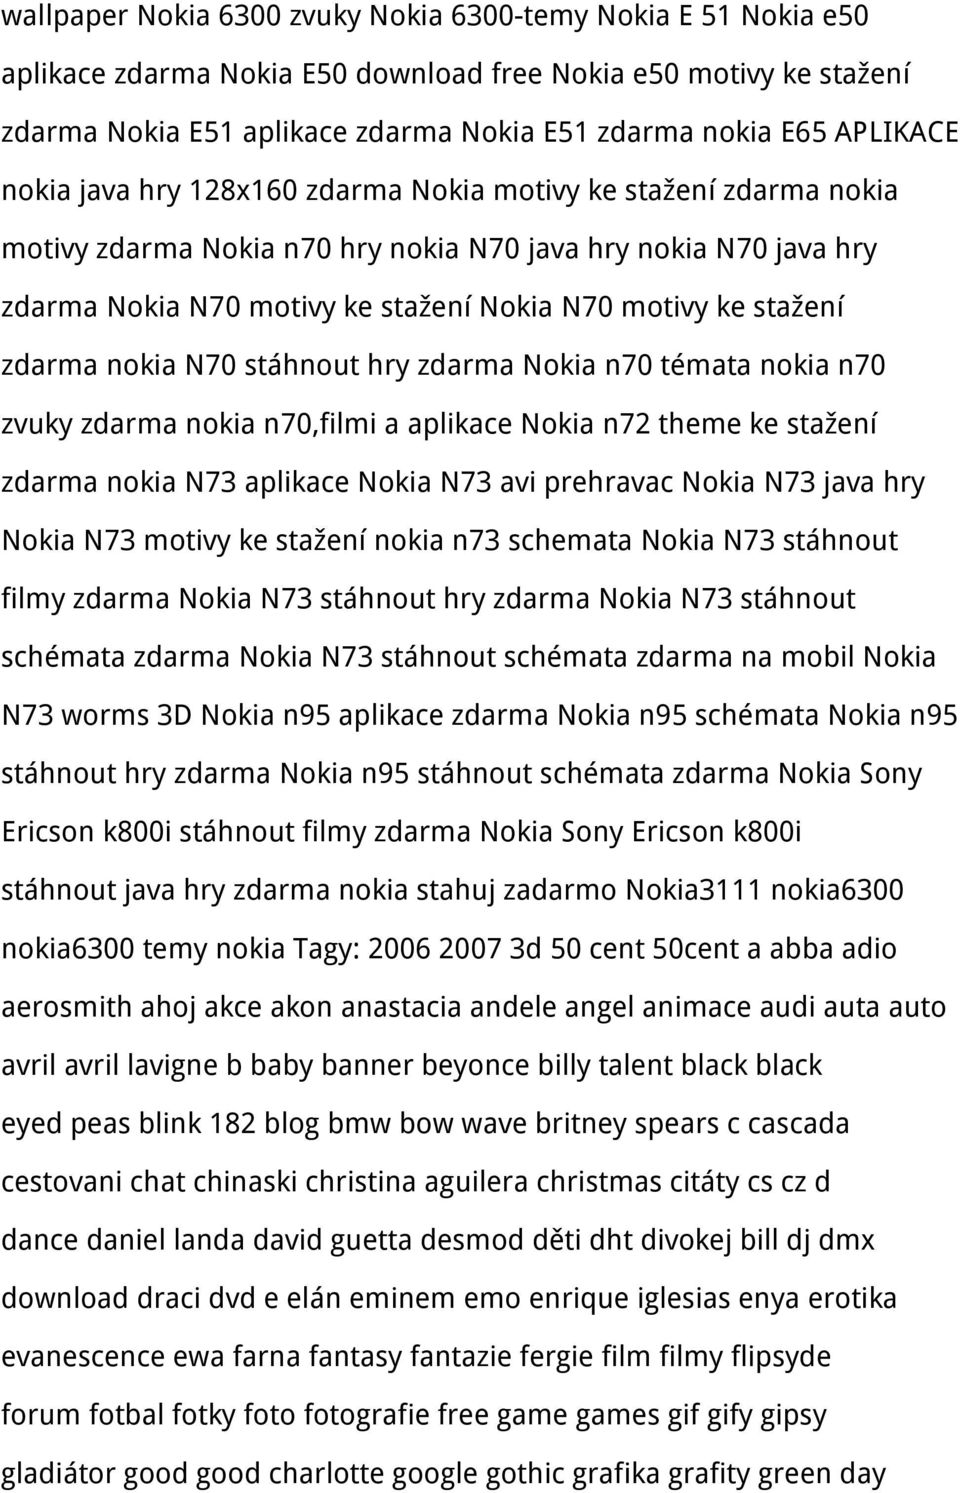 stažení zdarma nokia N70 stáhnout hry zdarma Nokia n70 témata nokia n70 zvuky zdarma nokia n70,filmi a aplikace Nokia n72 theme ke stažení zdarma nokia N73 aplikace Nokia N73 avi prehravac Nokia N73